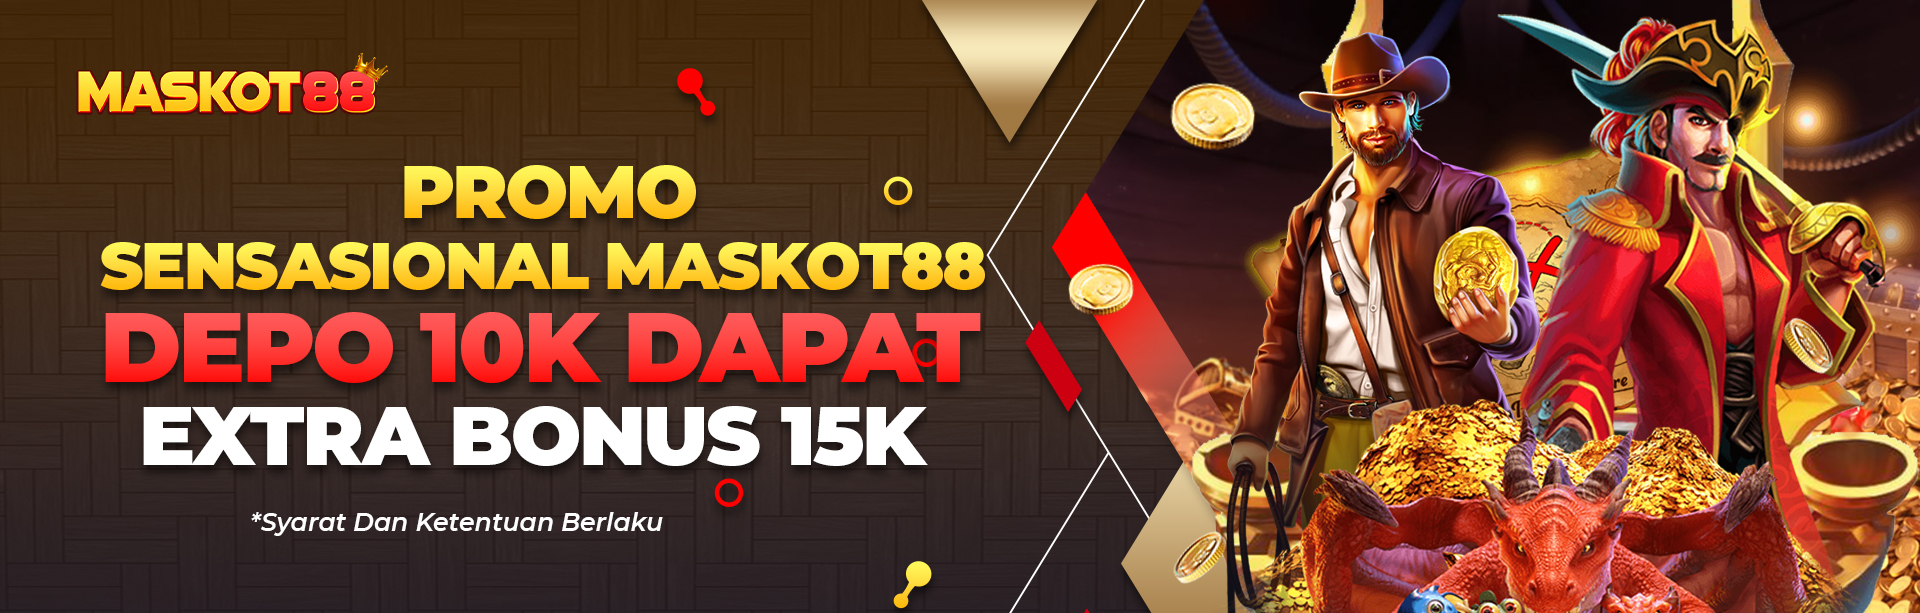 DEPO 10K DAPAT EXTRA BONUS 15K HANYA DI MASKOT88